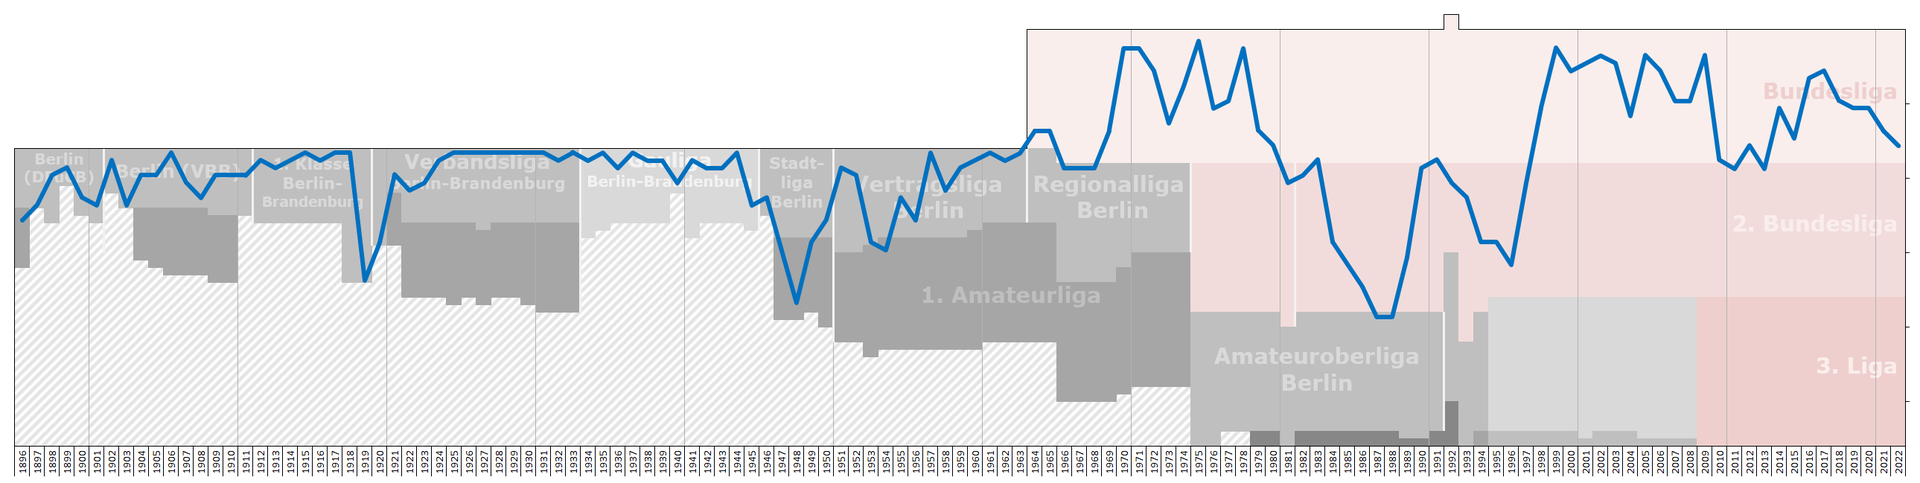 Trayectoria histórica del Hertha de Berlín. / Fuente: Wikipedia